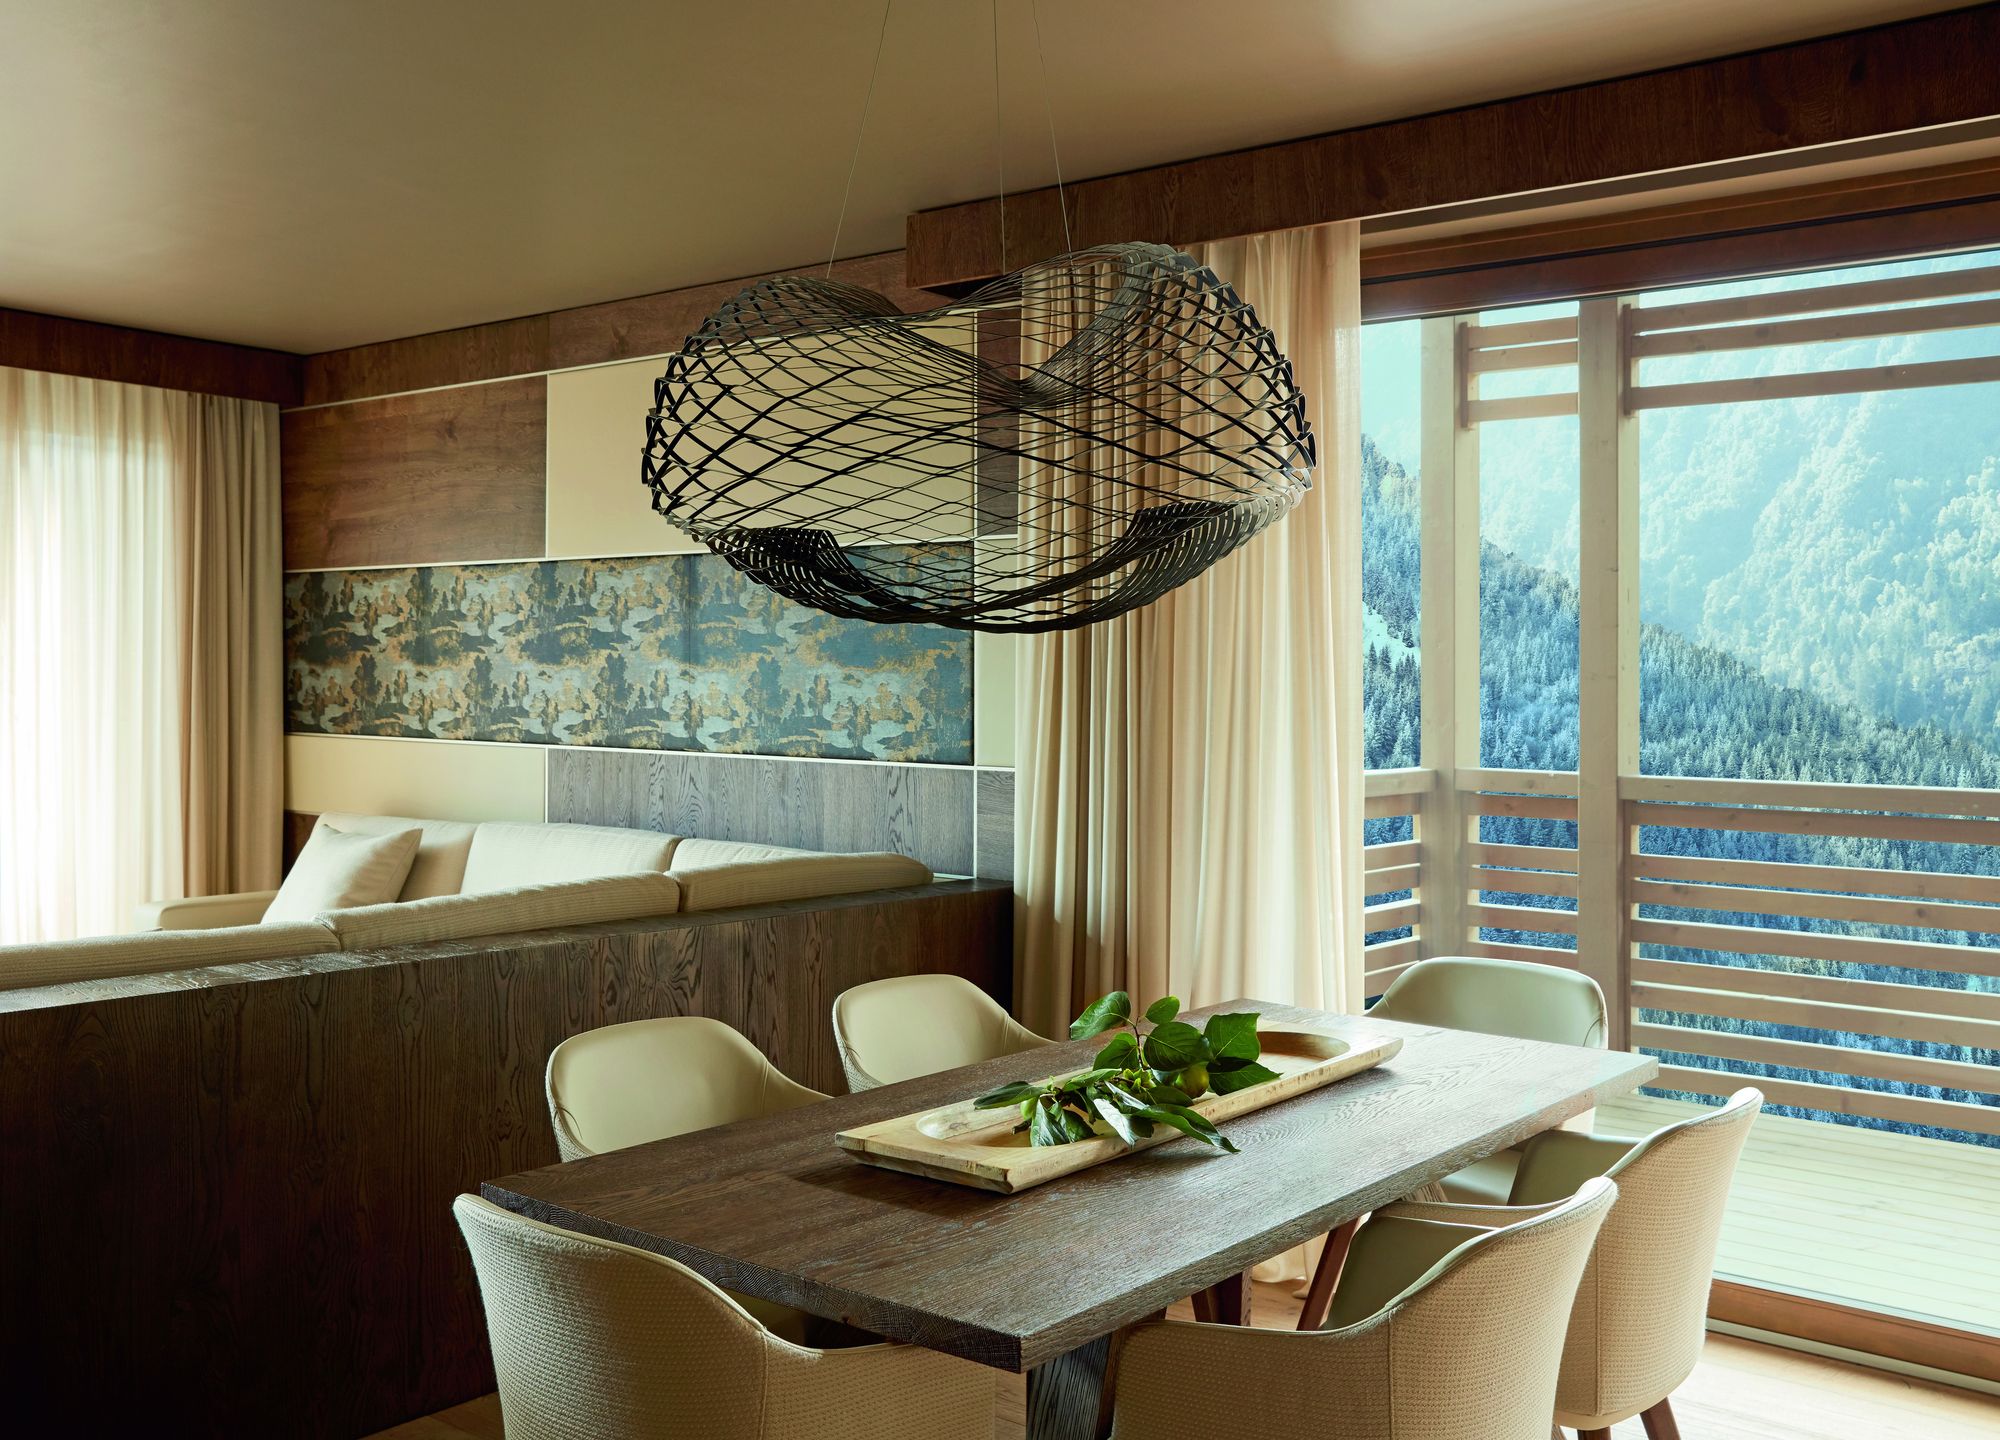 图片[16]|乐菲度假村；Spa Dolomiti|ART-Arrakis | 建筑室内设计的创新与灵感